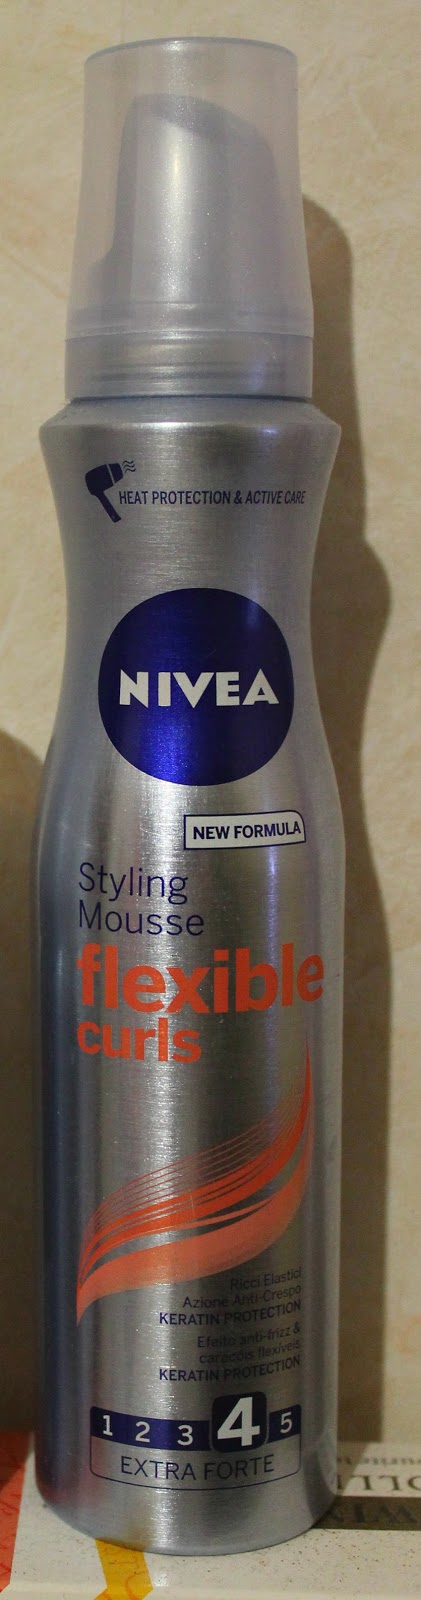 Nivea Mousse Flexible Curls